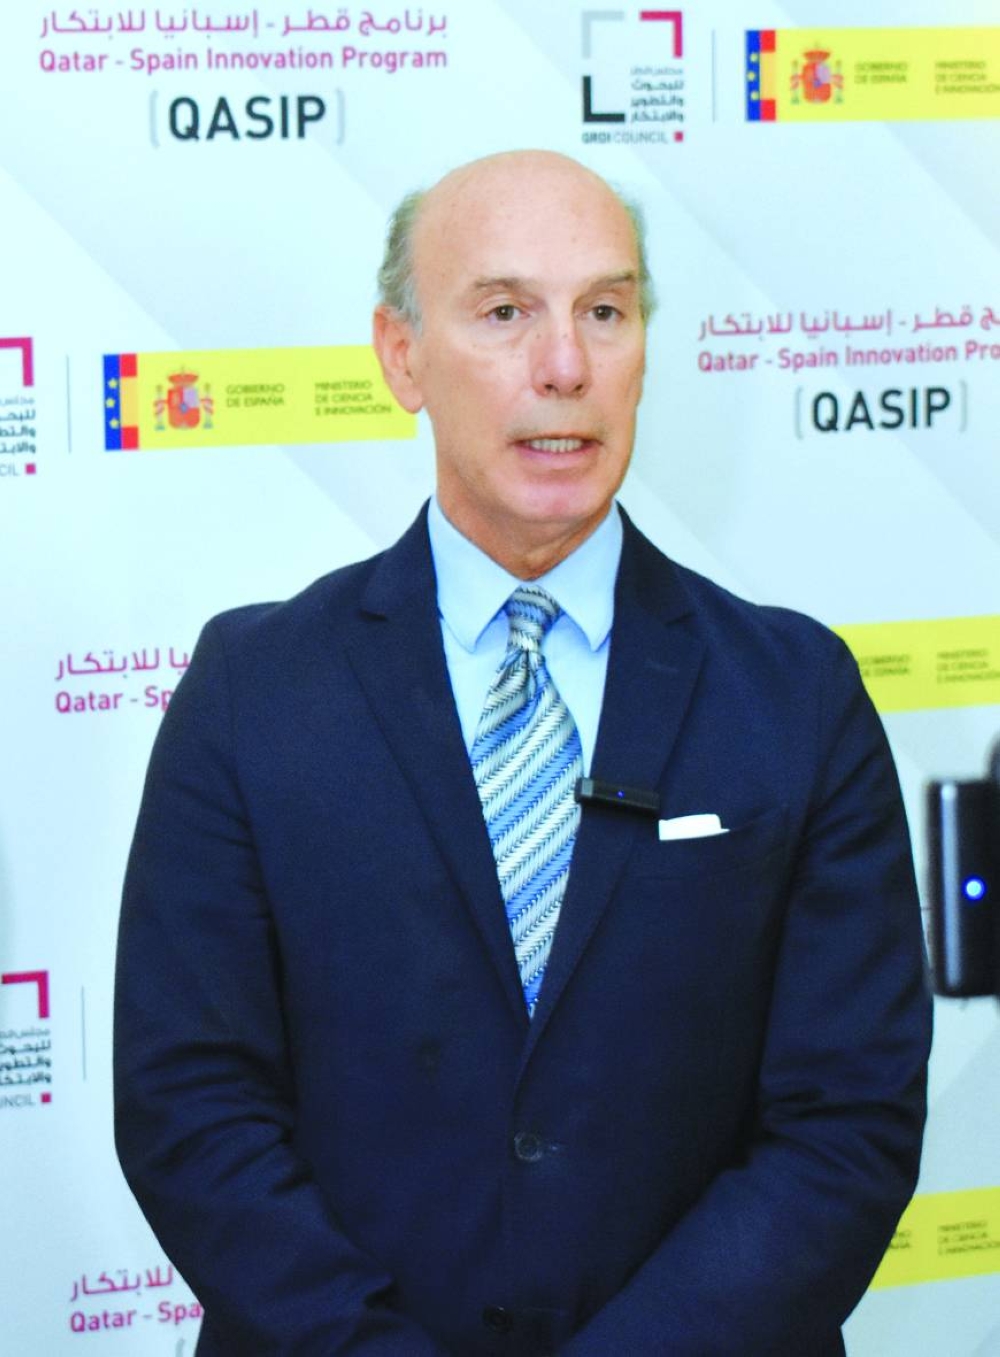 Le dialogue stratégique qatari-espagnol qui se tiendra cette année : Ambassadeur